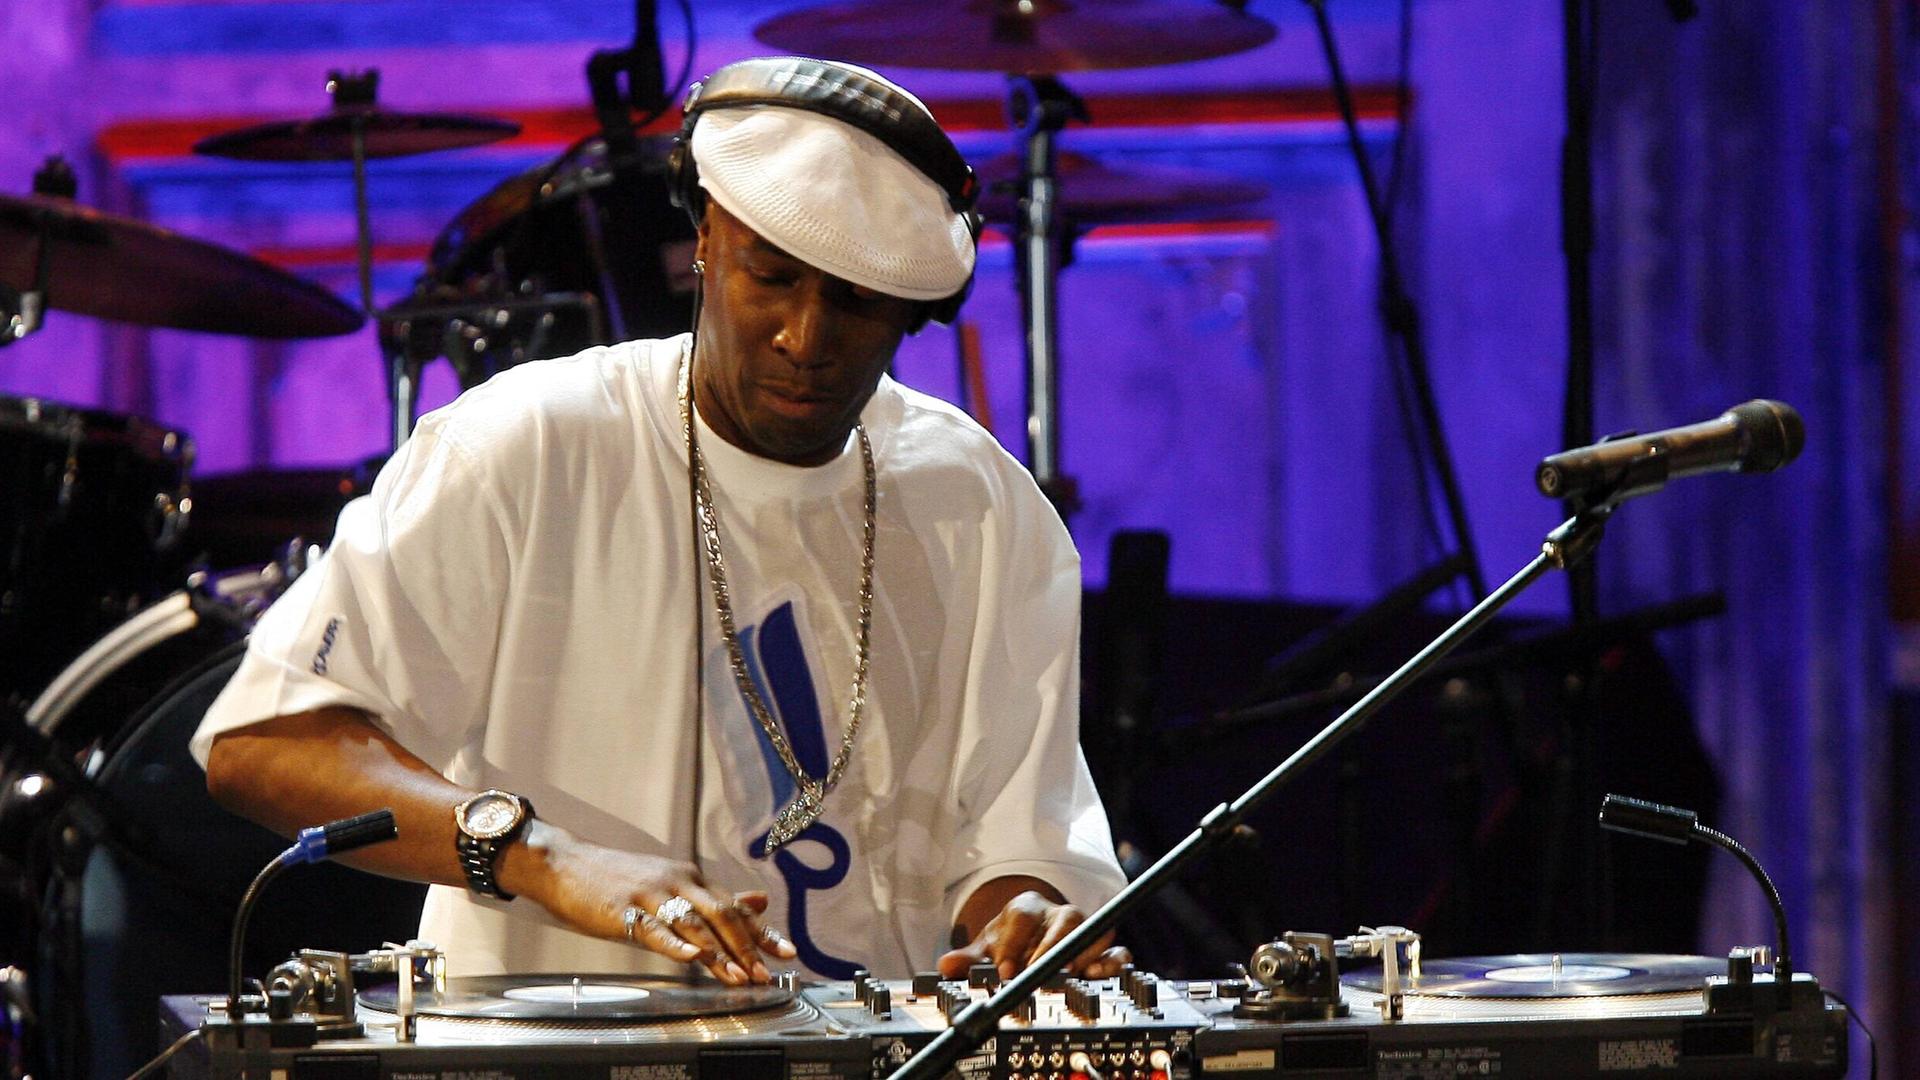 Ein Mann steht vor einem DJ Mischpult, die rechte Hand liegt auf der Platte. Er trägt Kopfhörer, ein weißes T-Shirt und eine weiße Schiebermütze.